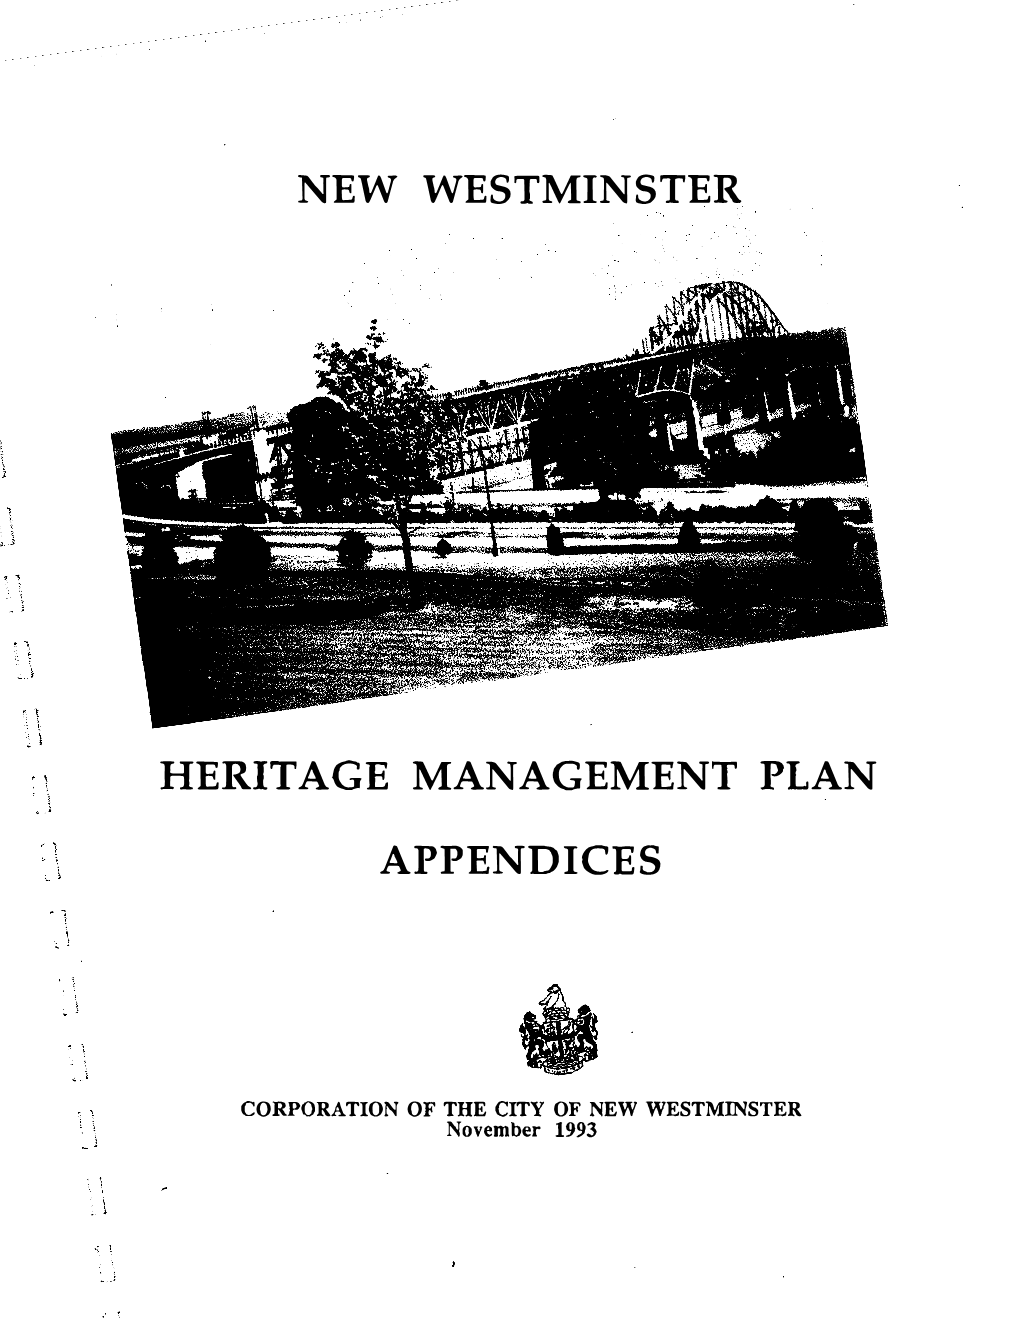 Heritage Management Plan Appendices